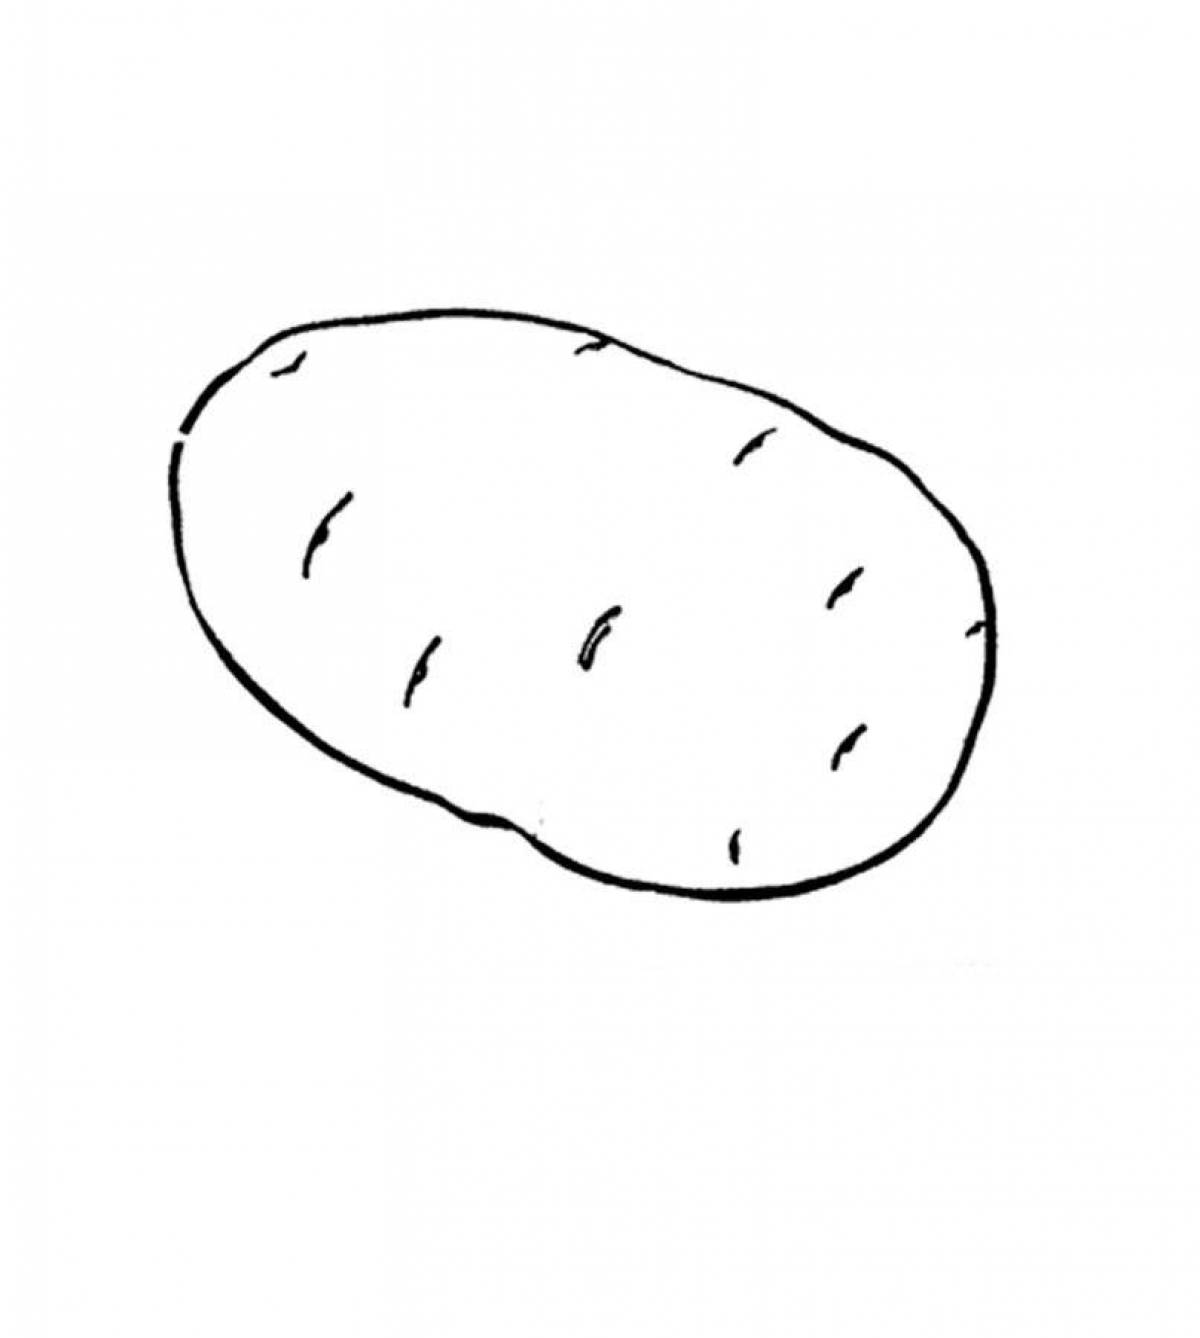 Potato #1